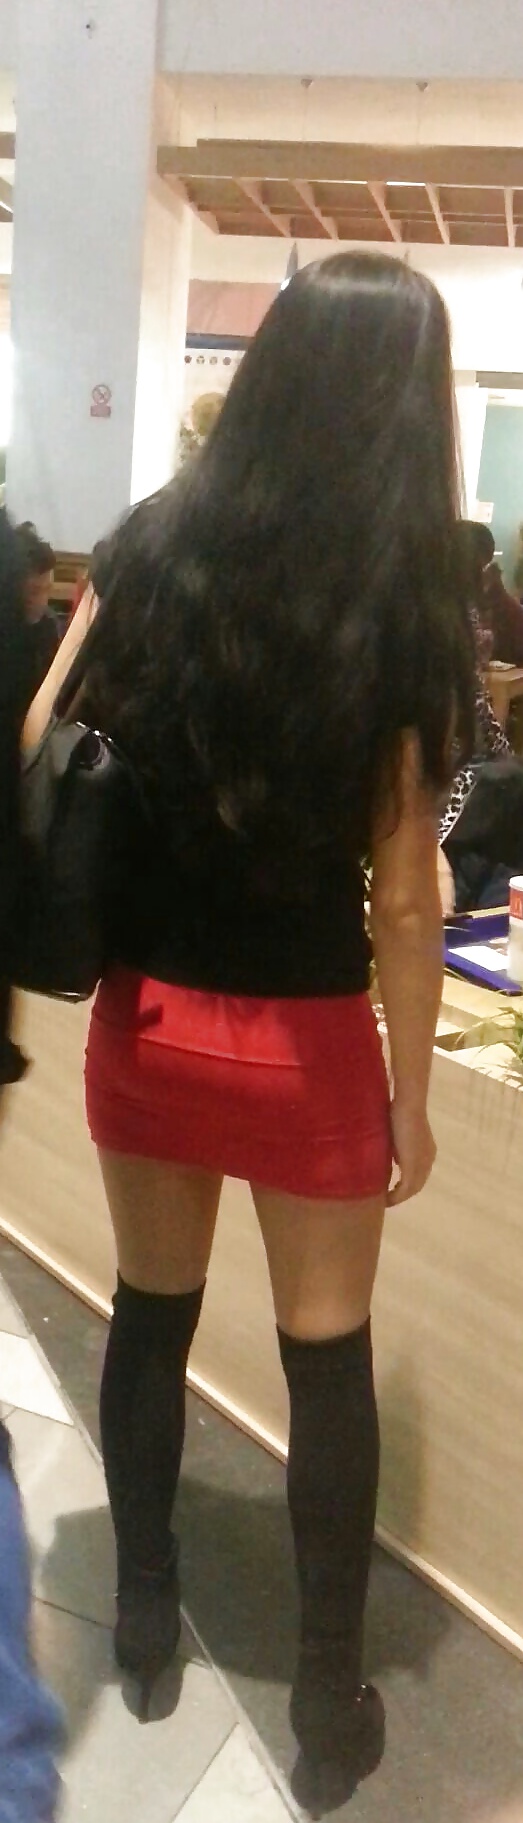 Spy mini skirt sexy teens in mall romanian #39540235